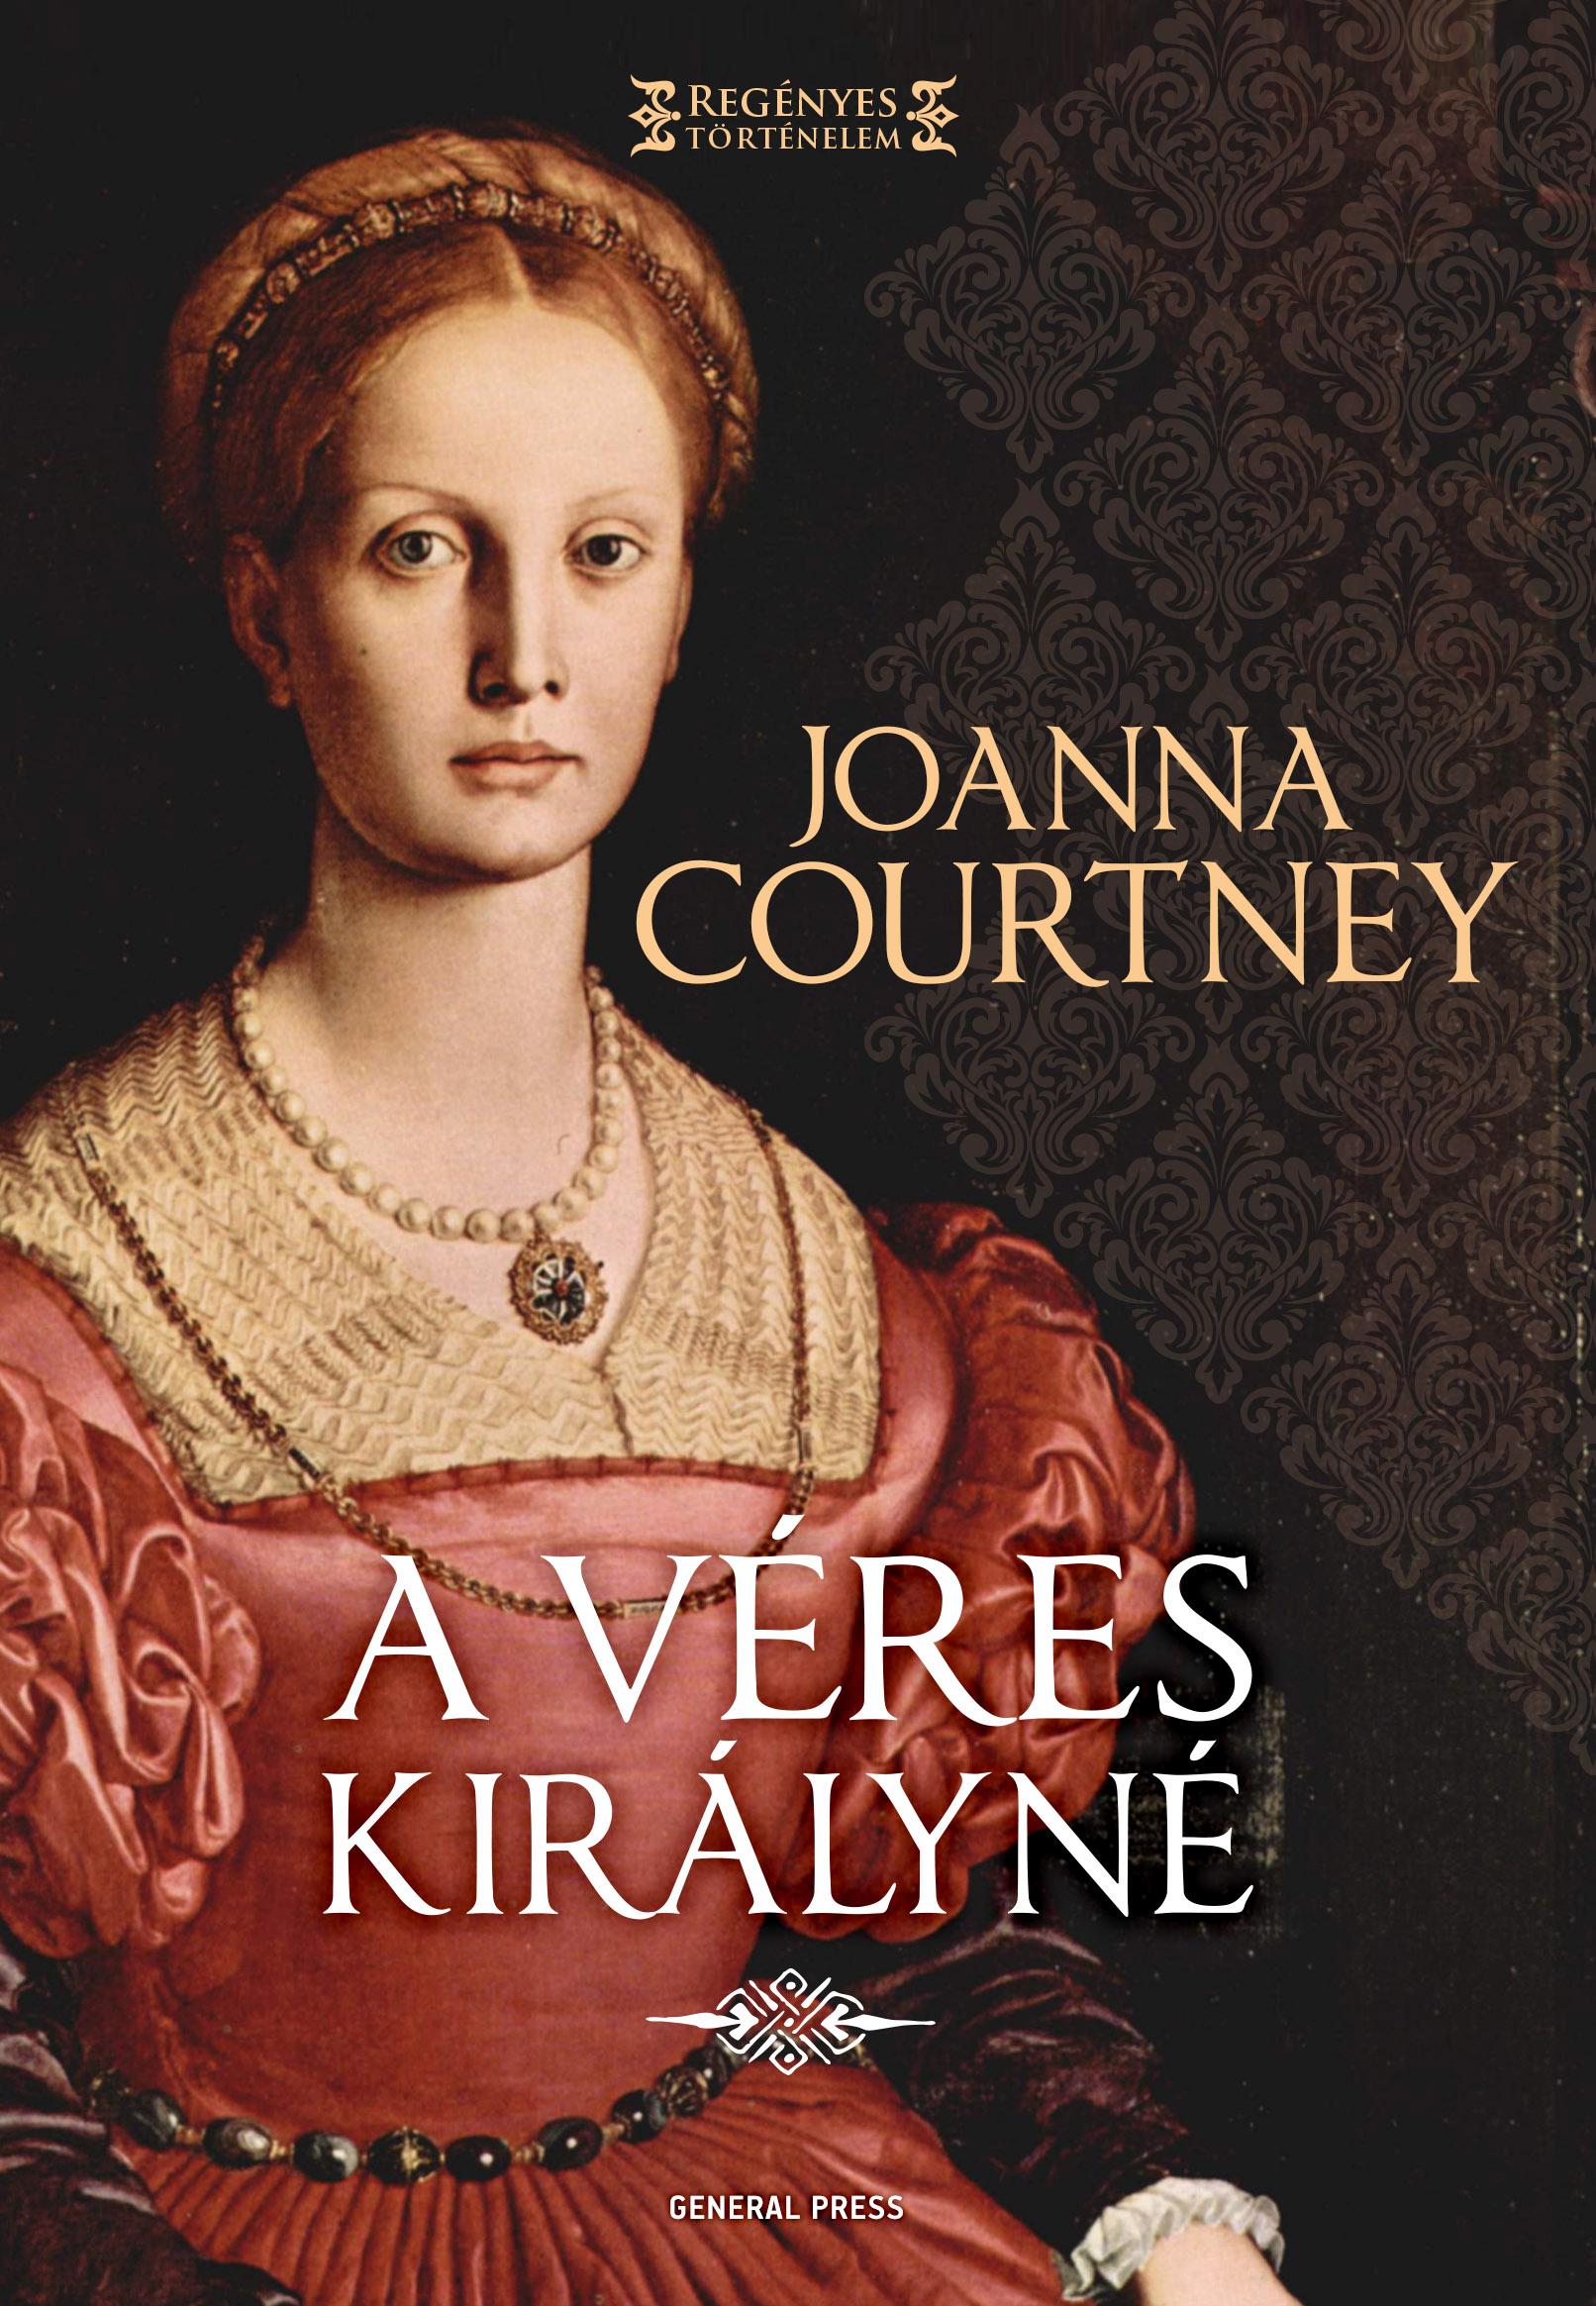 Joanna Courtney - A véres királyné